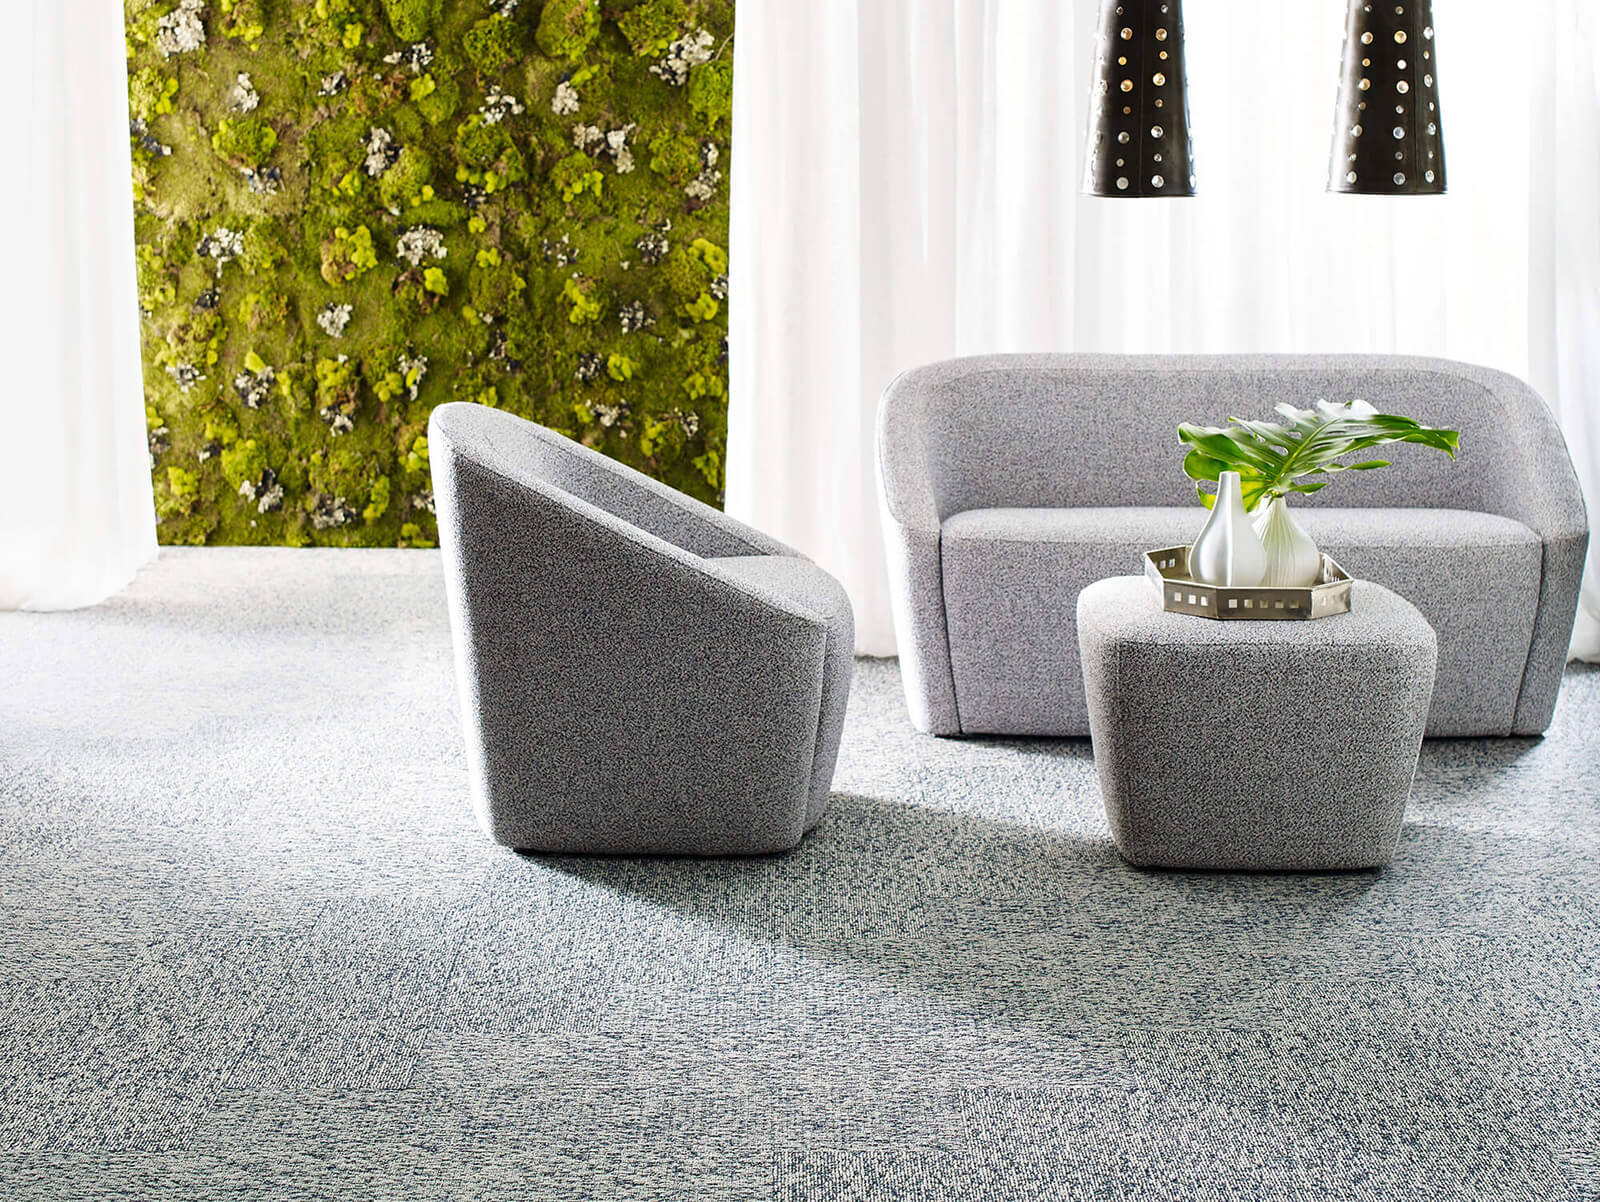 Carpet flooring | IQ Floors